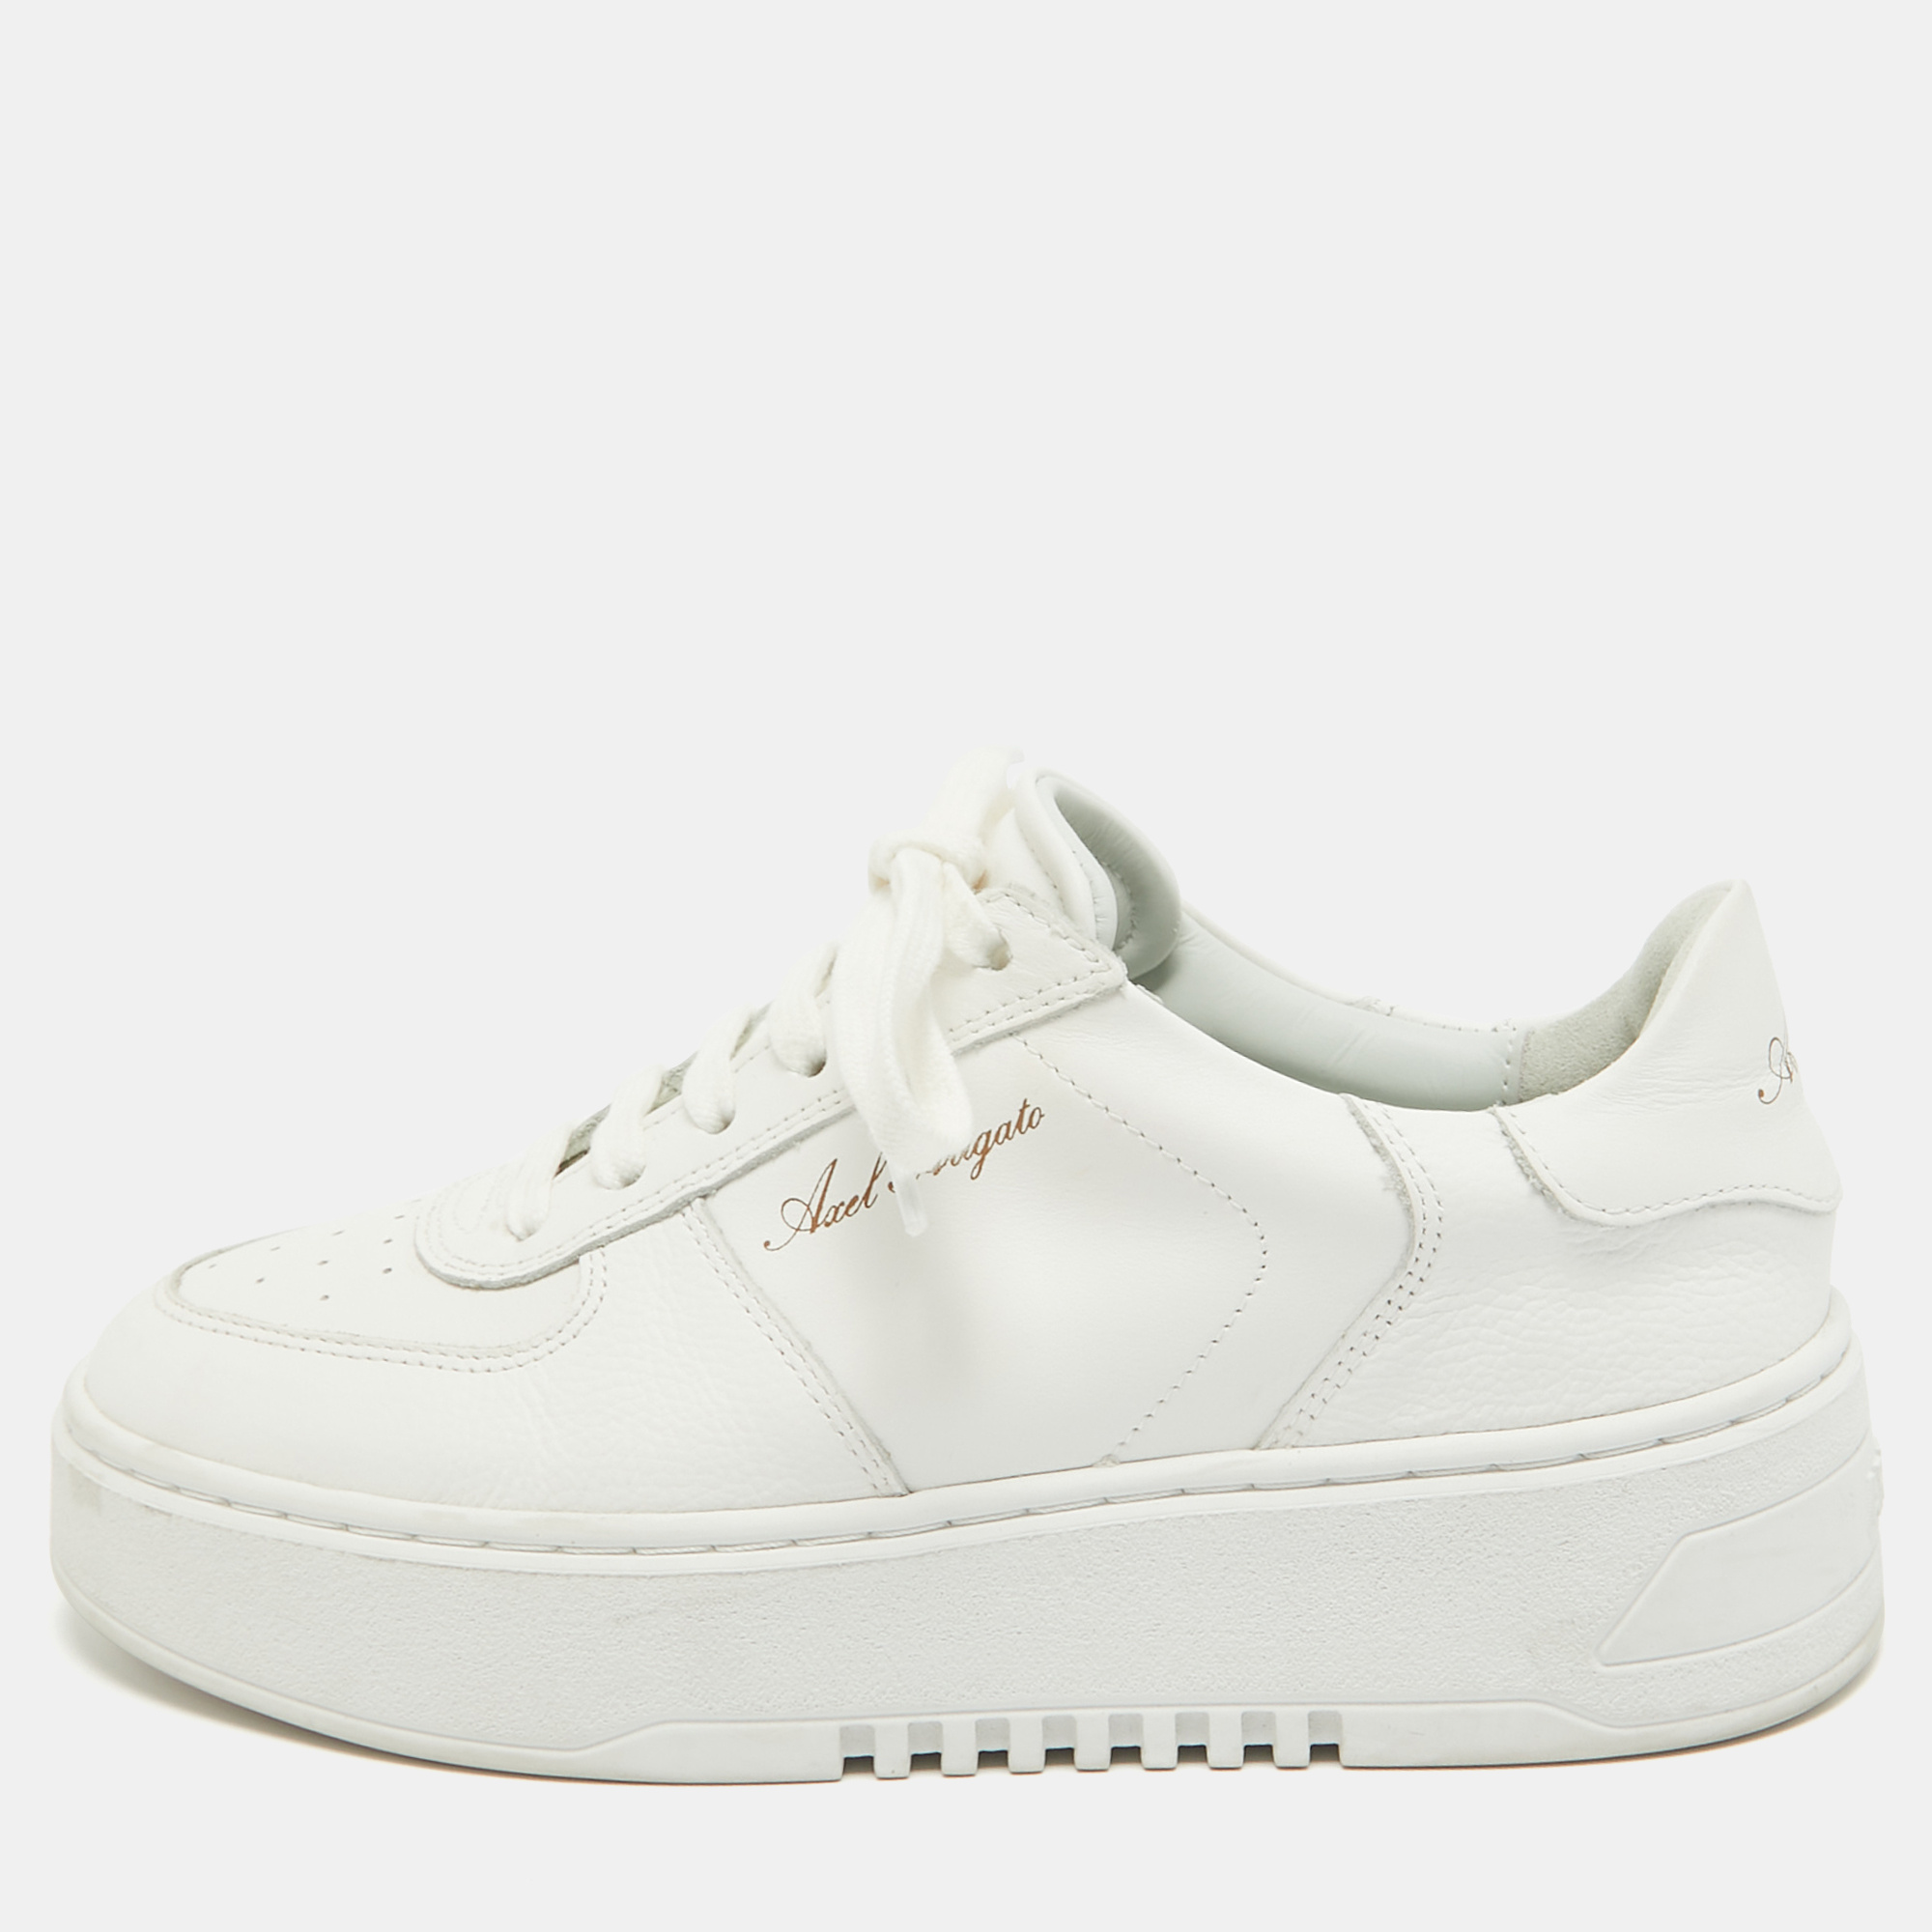 

Axel Arigato White Leather Orbit Sneakers Size